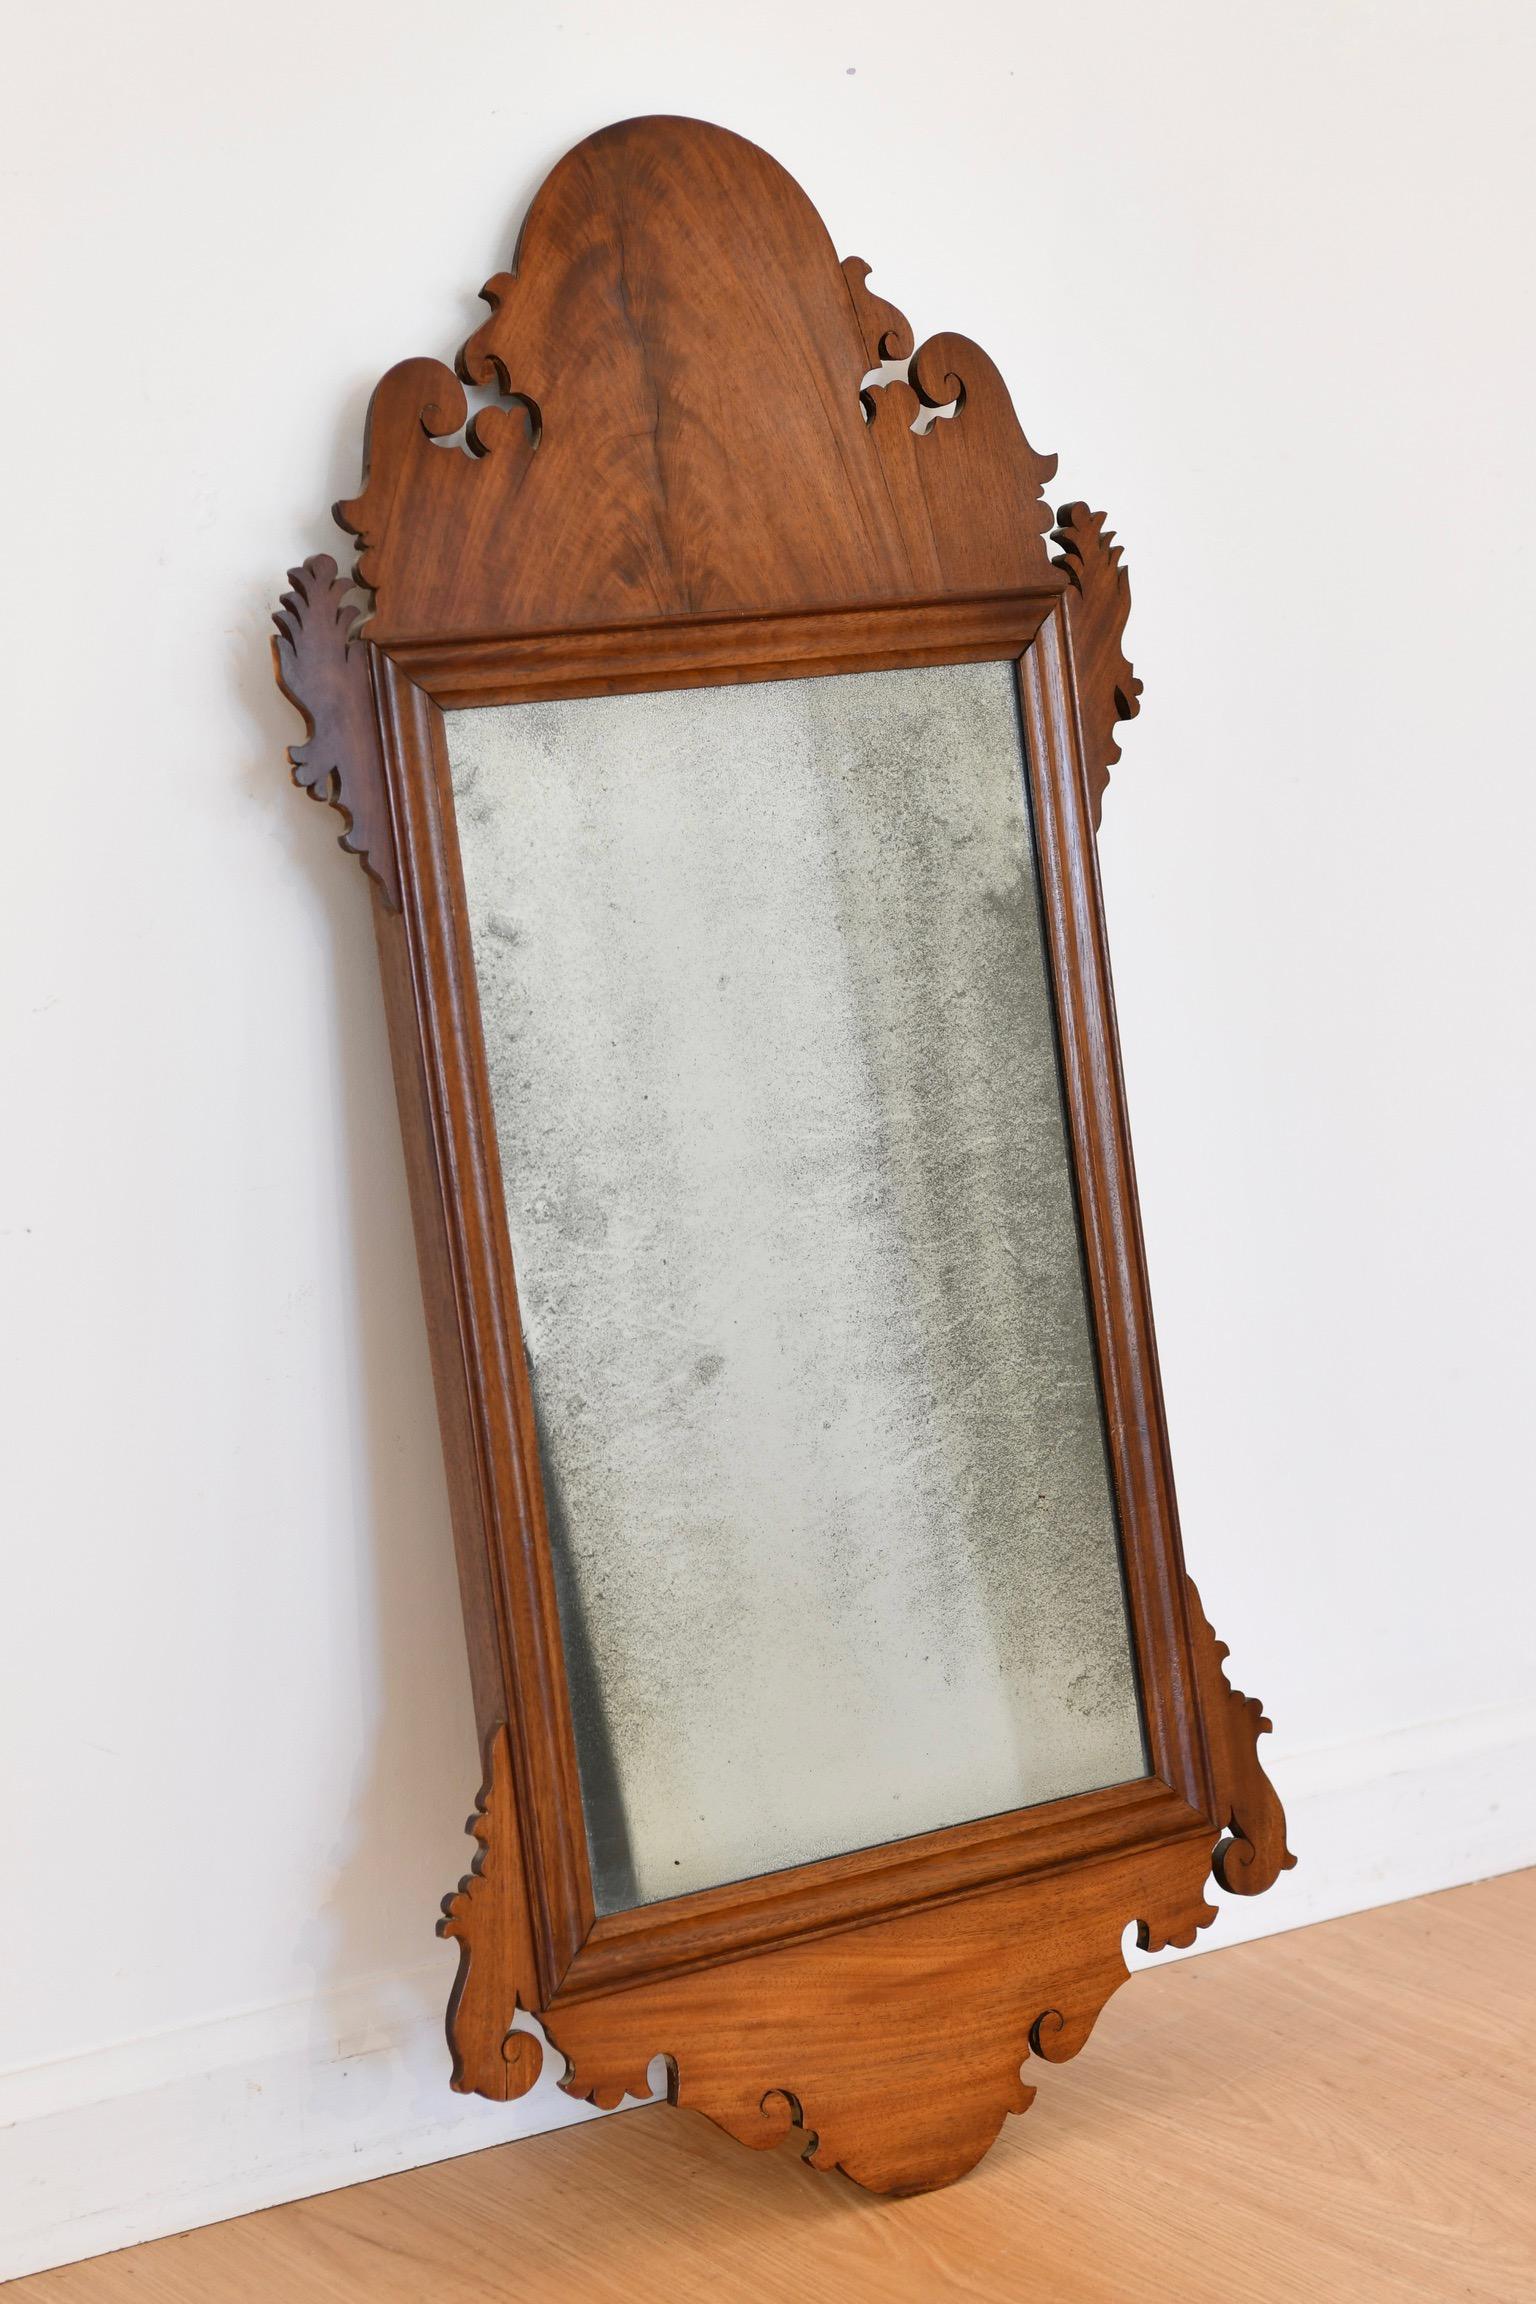 Miroir ancien Chippendale en acajou sculpté, attribué à l'atelier de John Elliott, Philadelphie, vers le milieu ou la fin du XVIIIe siècle. Provenance : Propriété d'une succession du comté de Chesty, Pennsylvanie. Dimensions : 35 